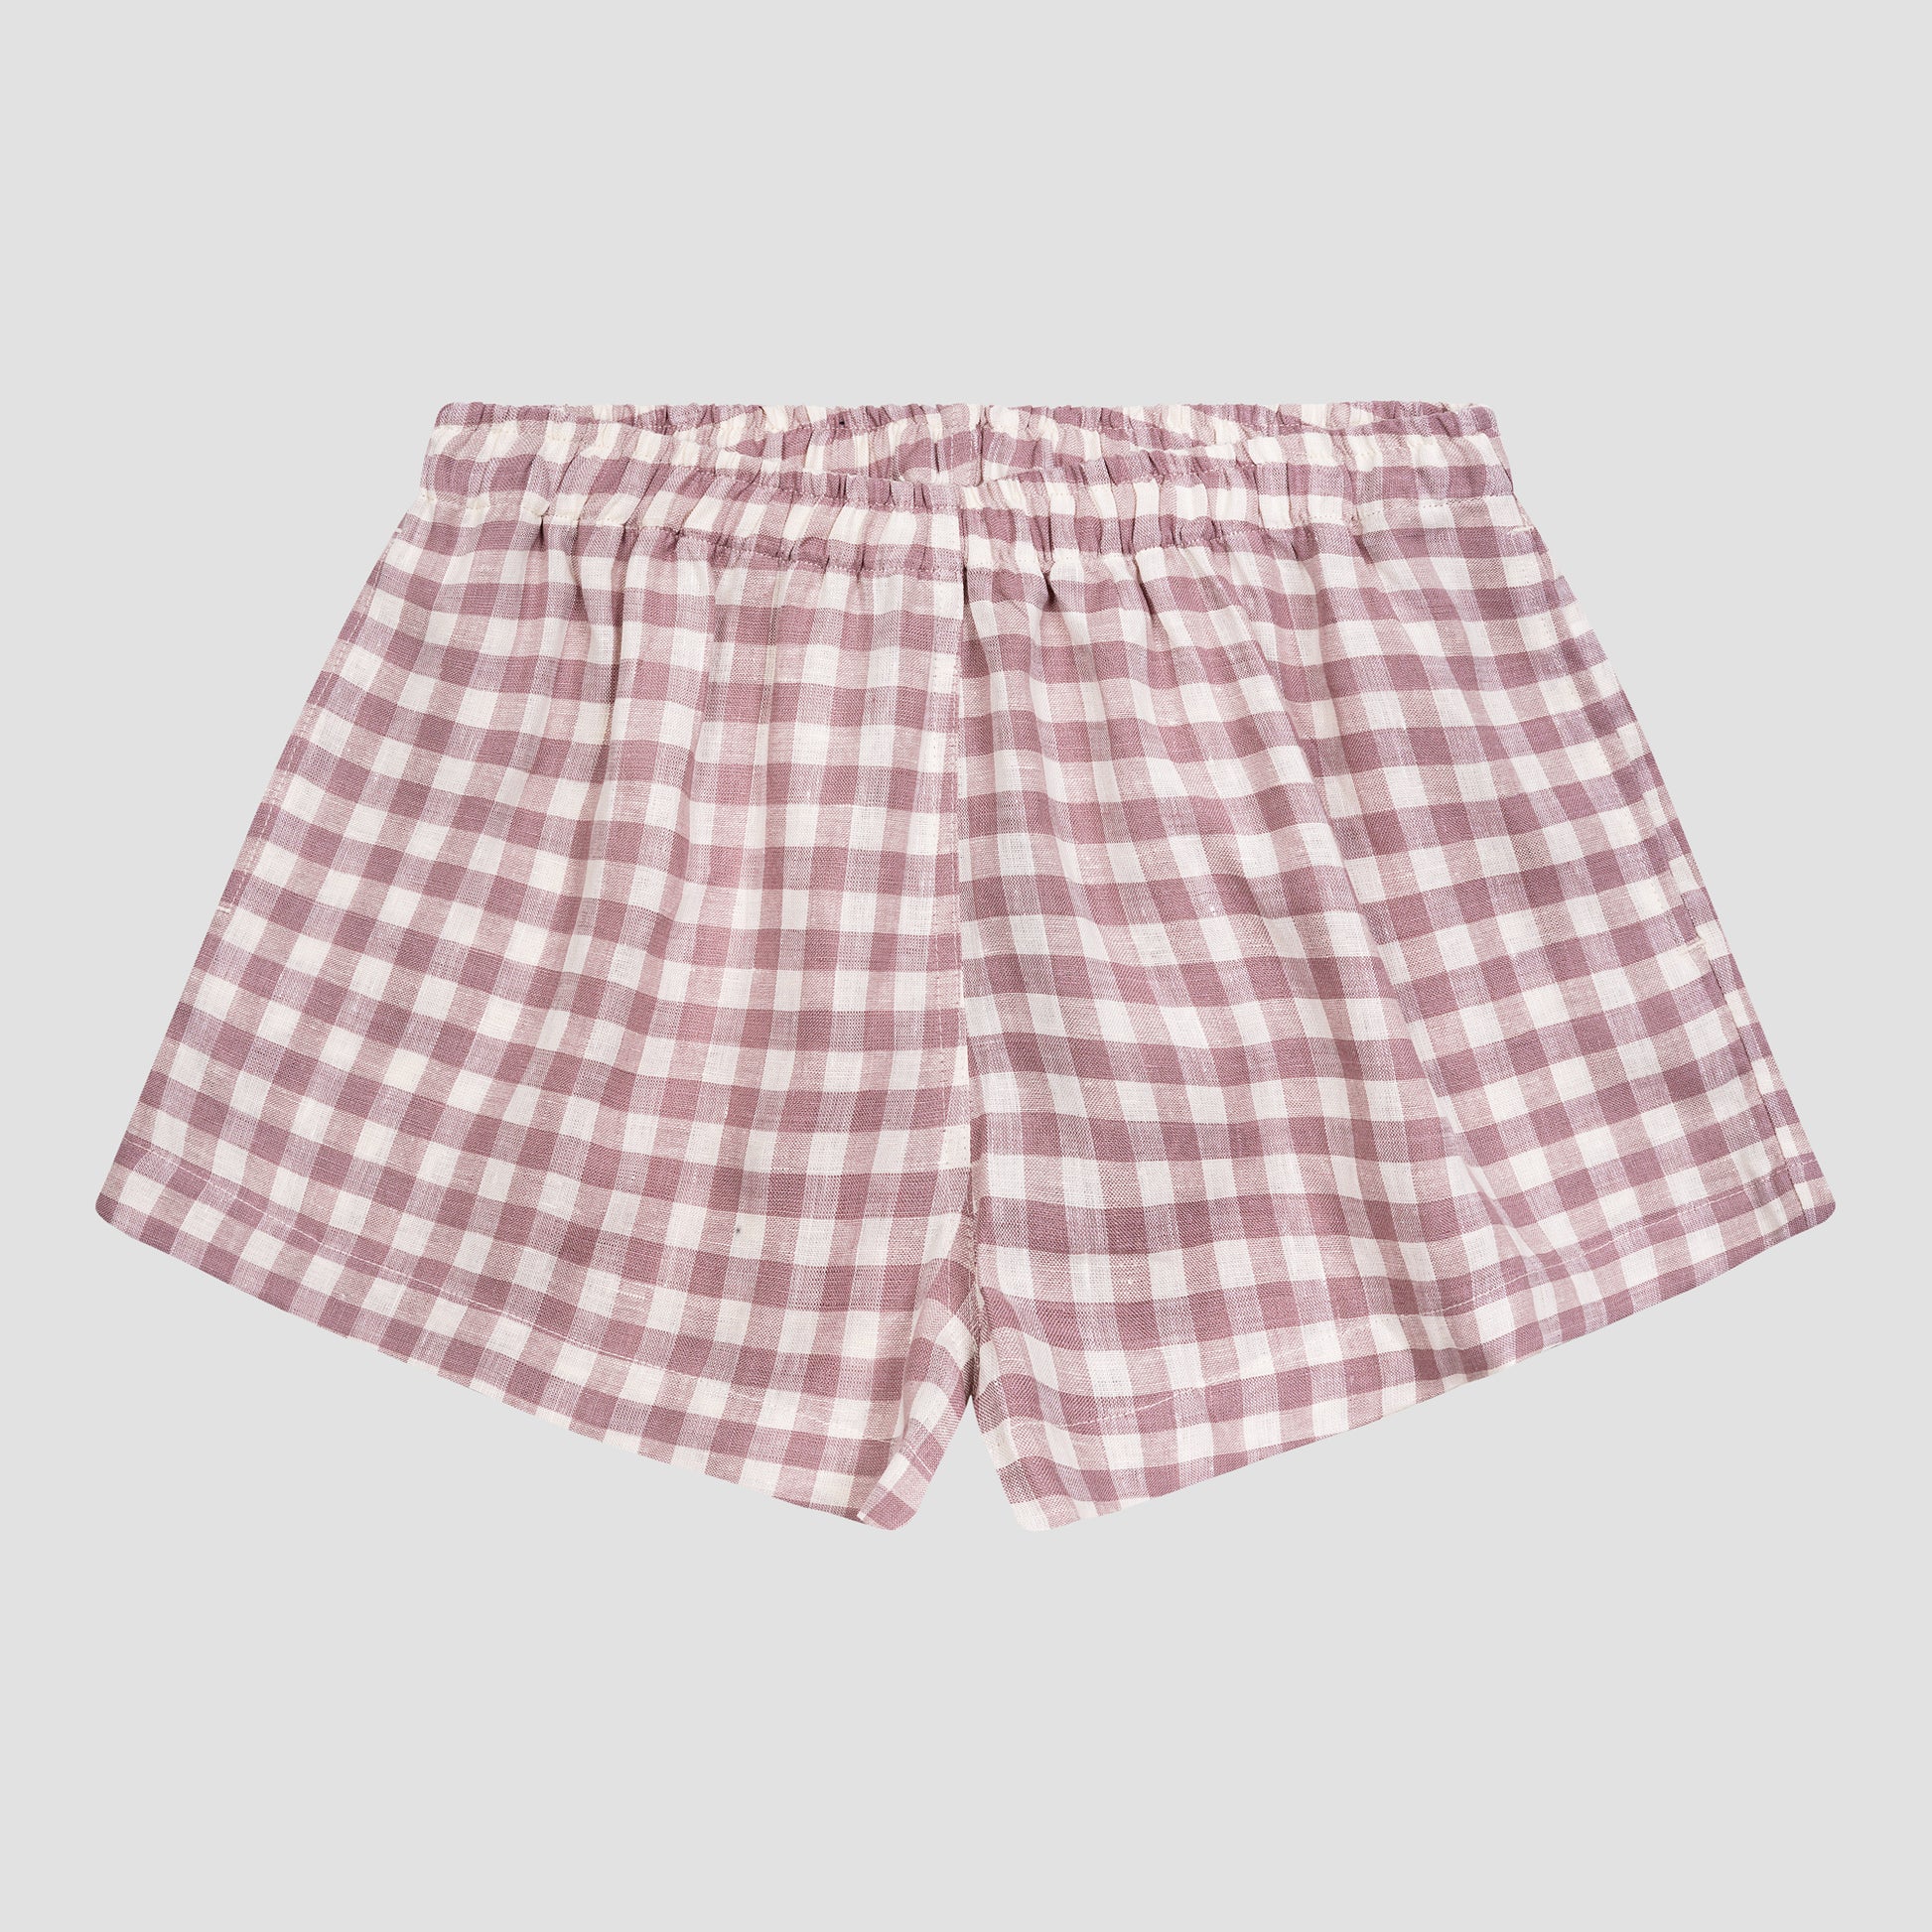 Elderberry Gingham Linen Women's Pyjama Shorts